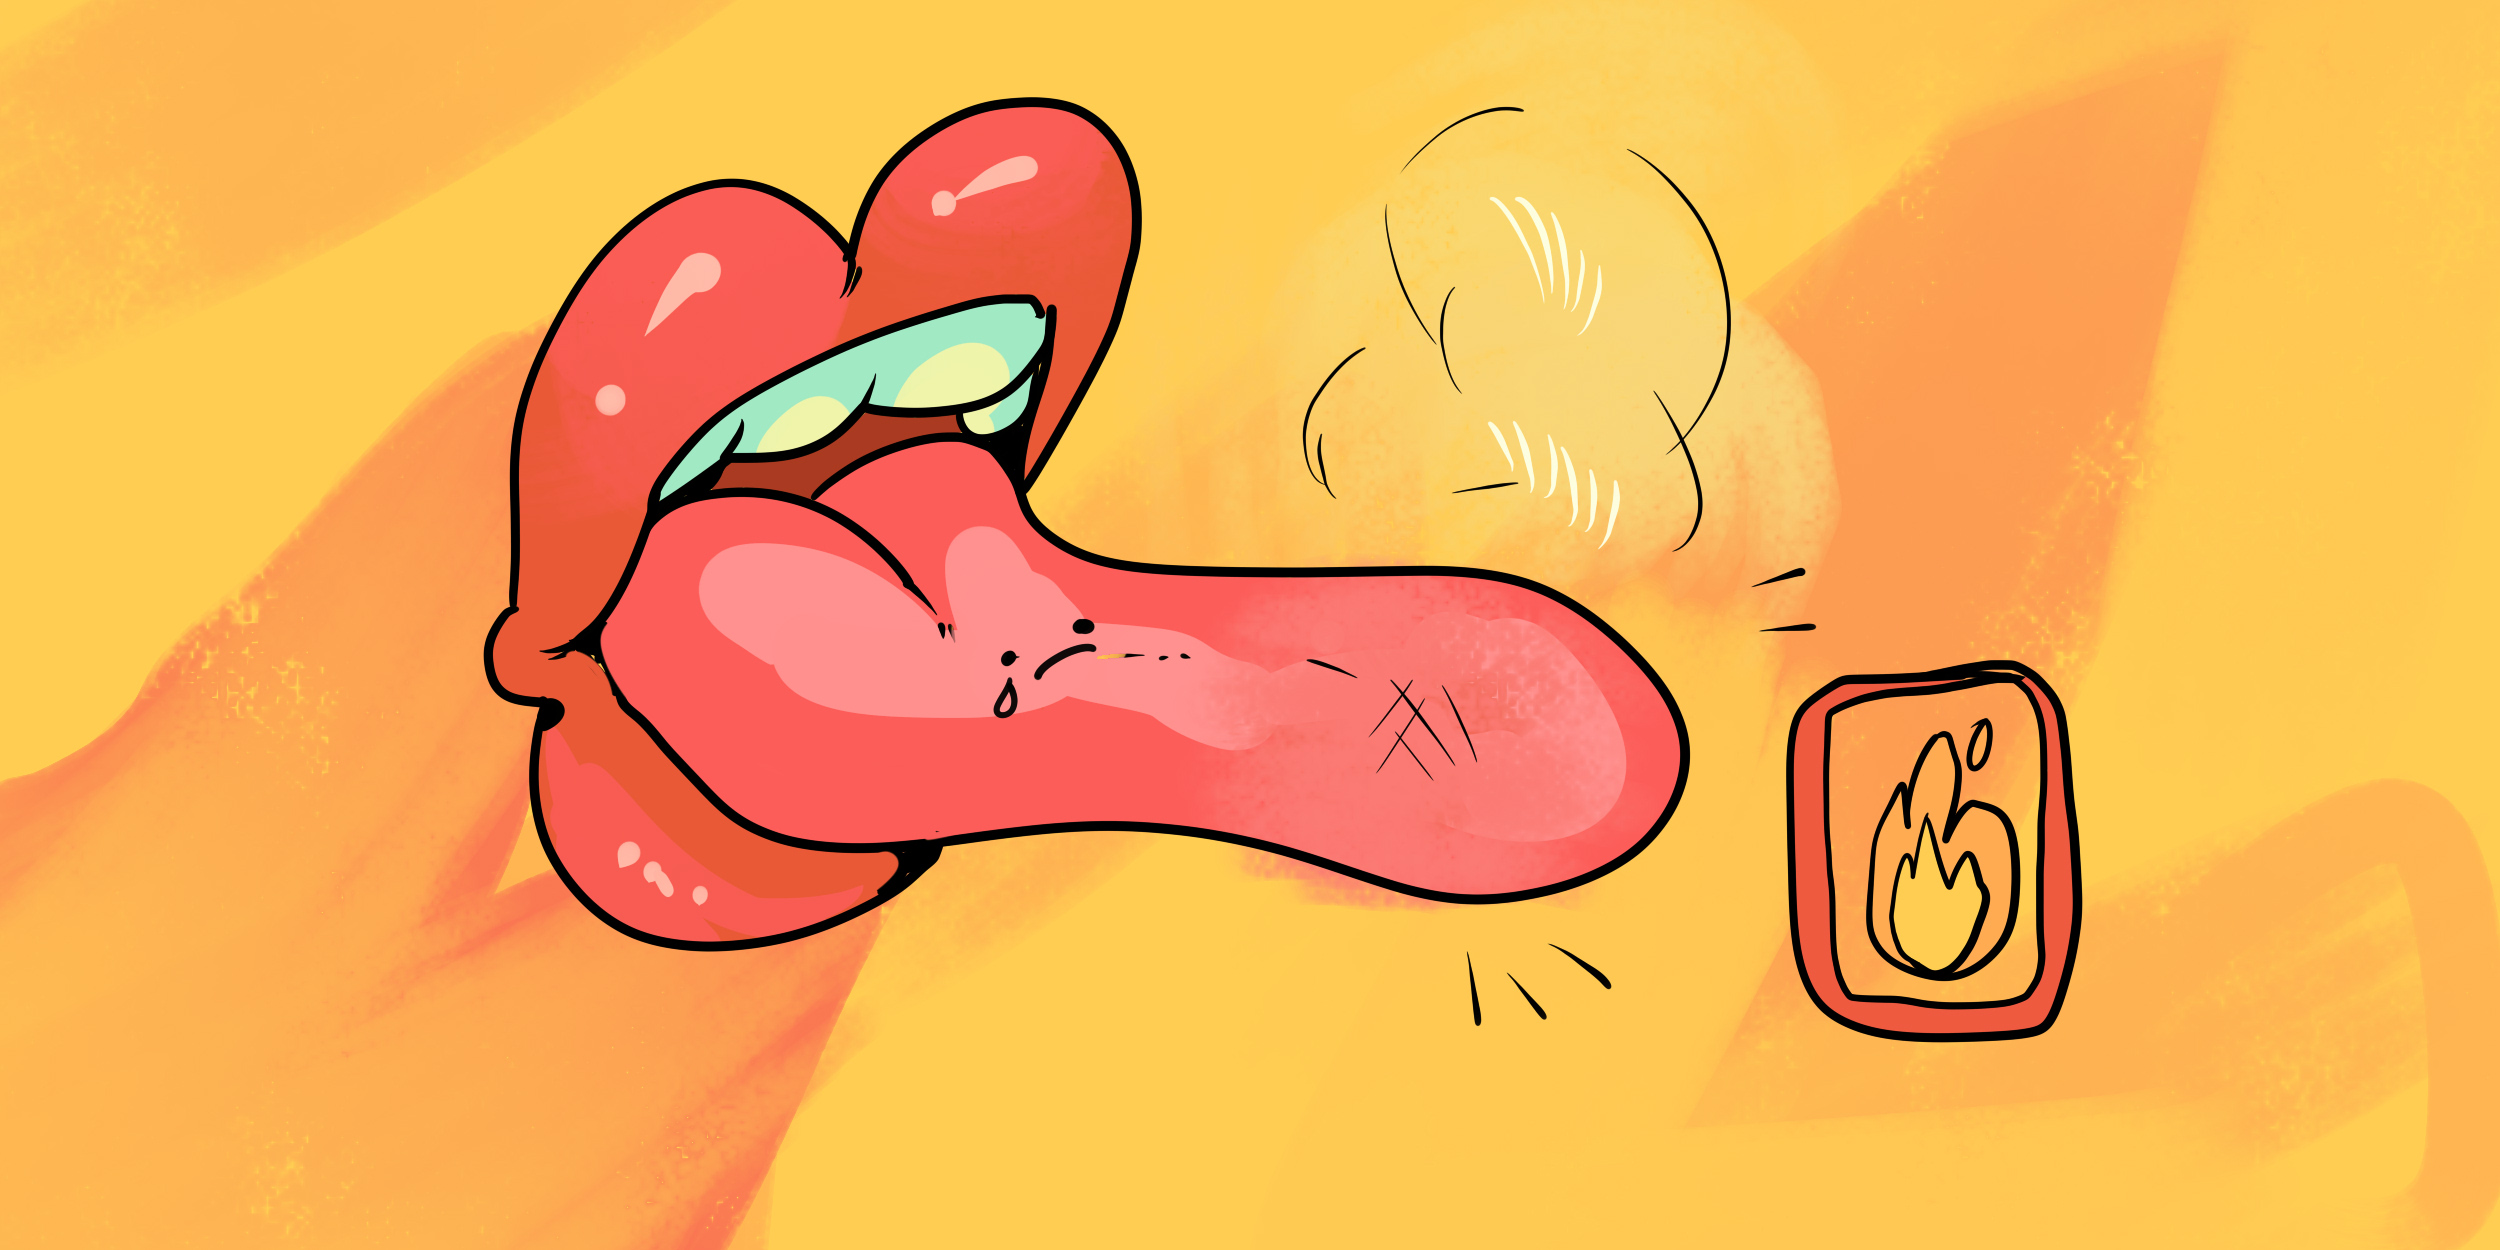 Синдром жжения в полости рта: как погасить пламя